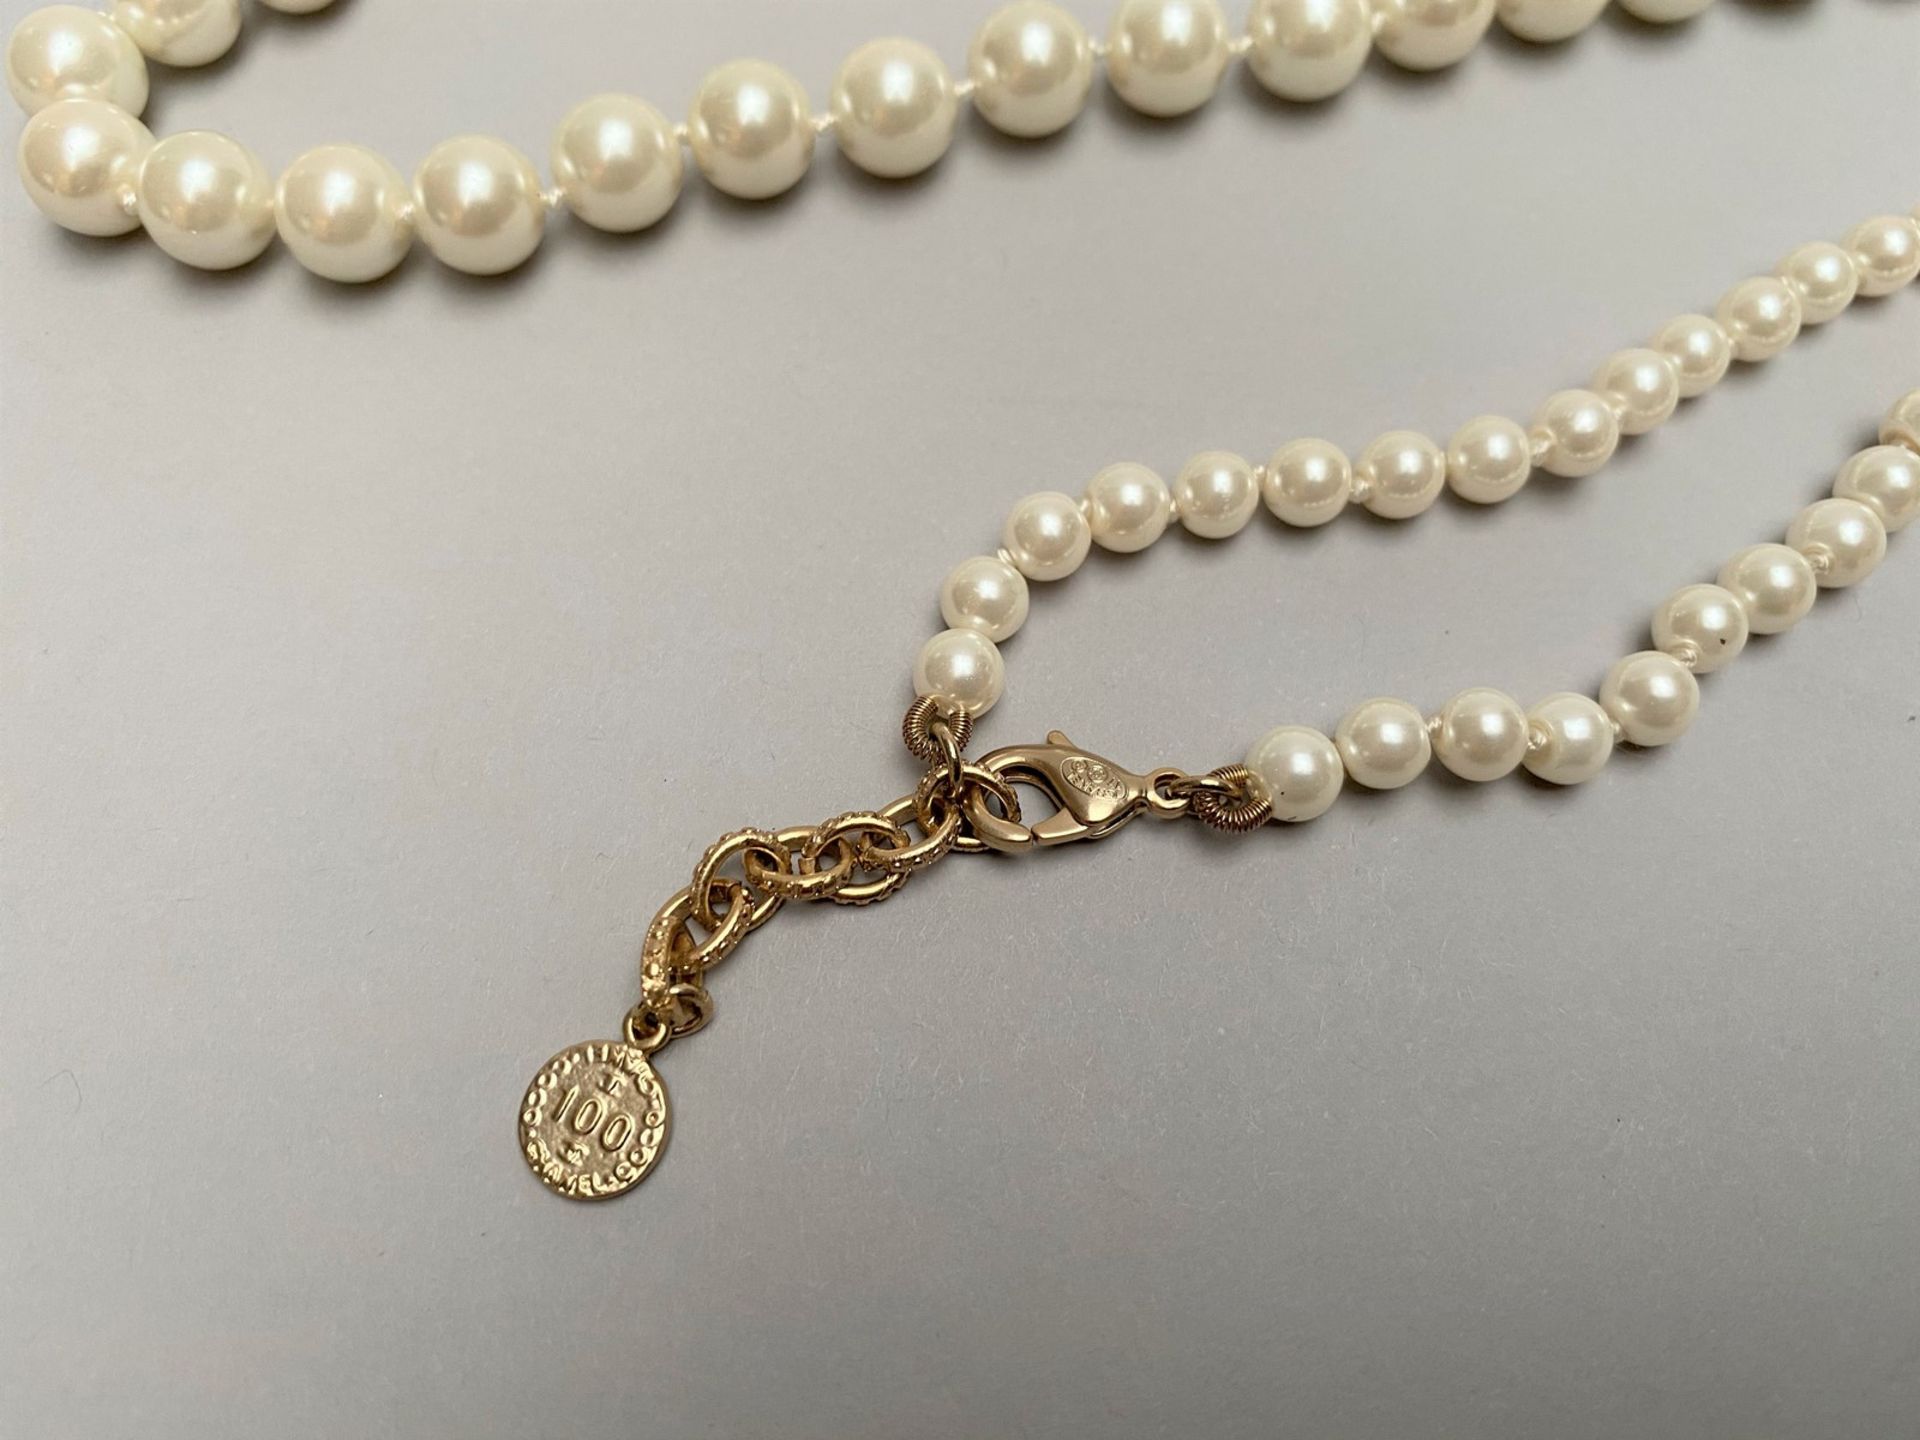 CHANEL - SAUTOIR en perles d'imitation entrecoupées de sigles CC en métal doré [...] - Image 4 of 4